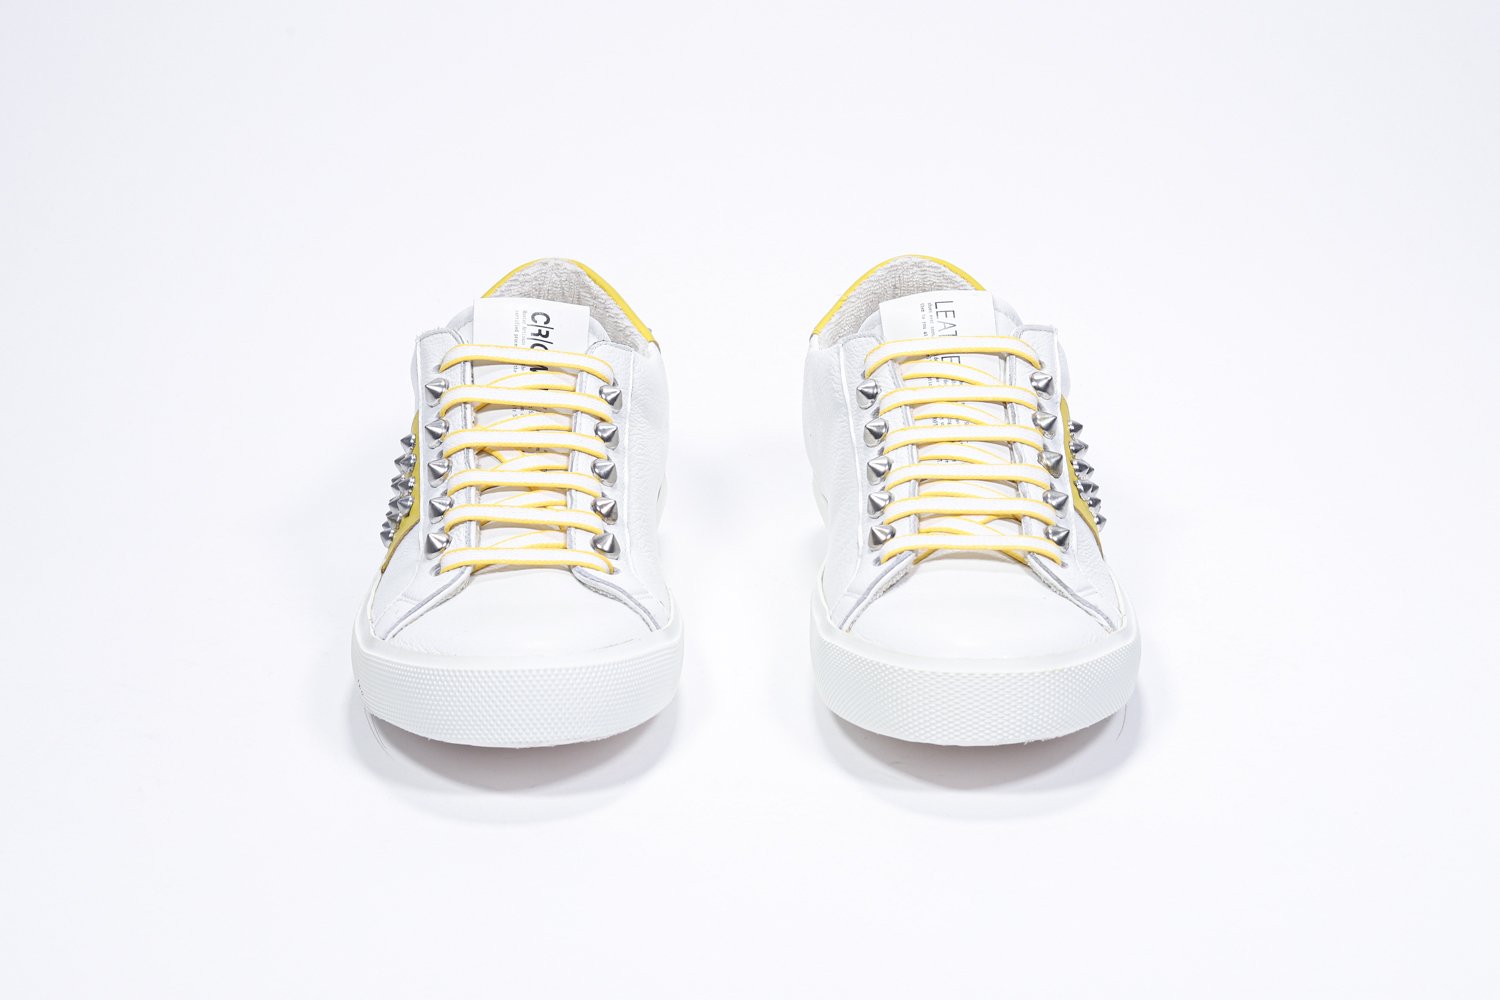 Vorderansicht des weißen und gelben Low Top sneaker. Obermaterial aus Vollleder mit Nieten und weißer Gummisohle.